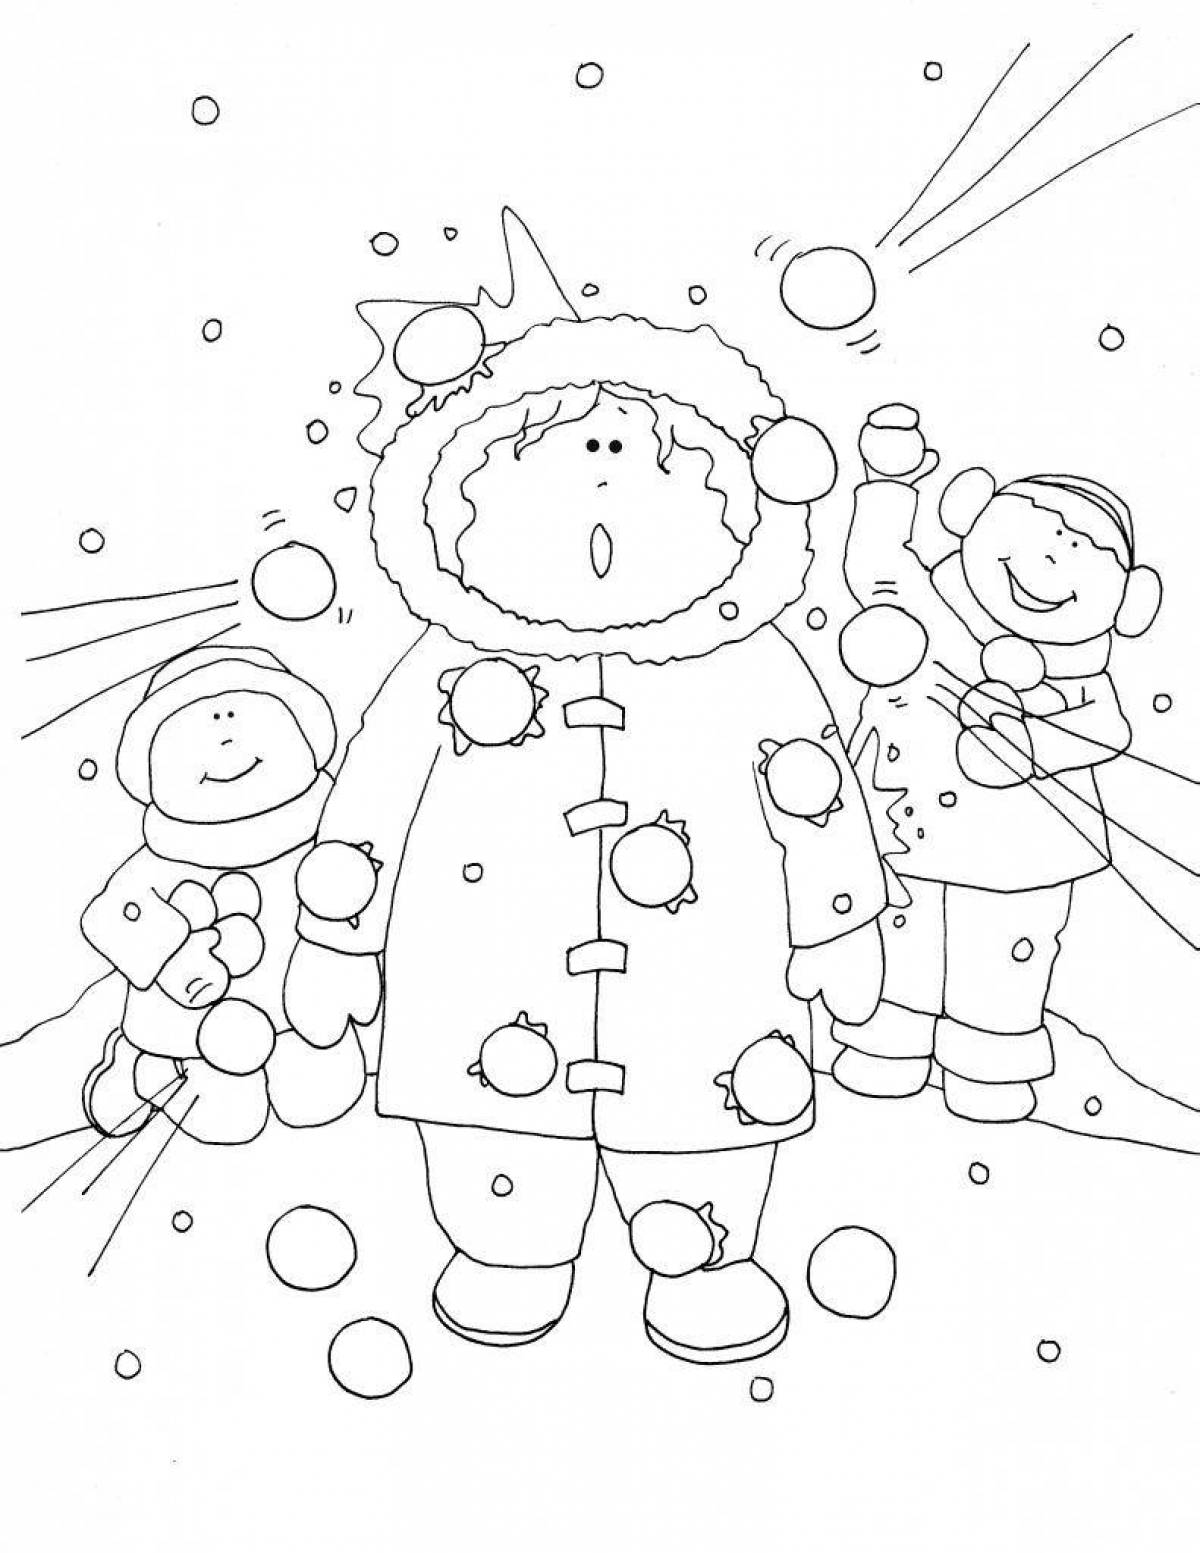 Радостная раскраска «снежок» для детей